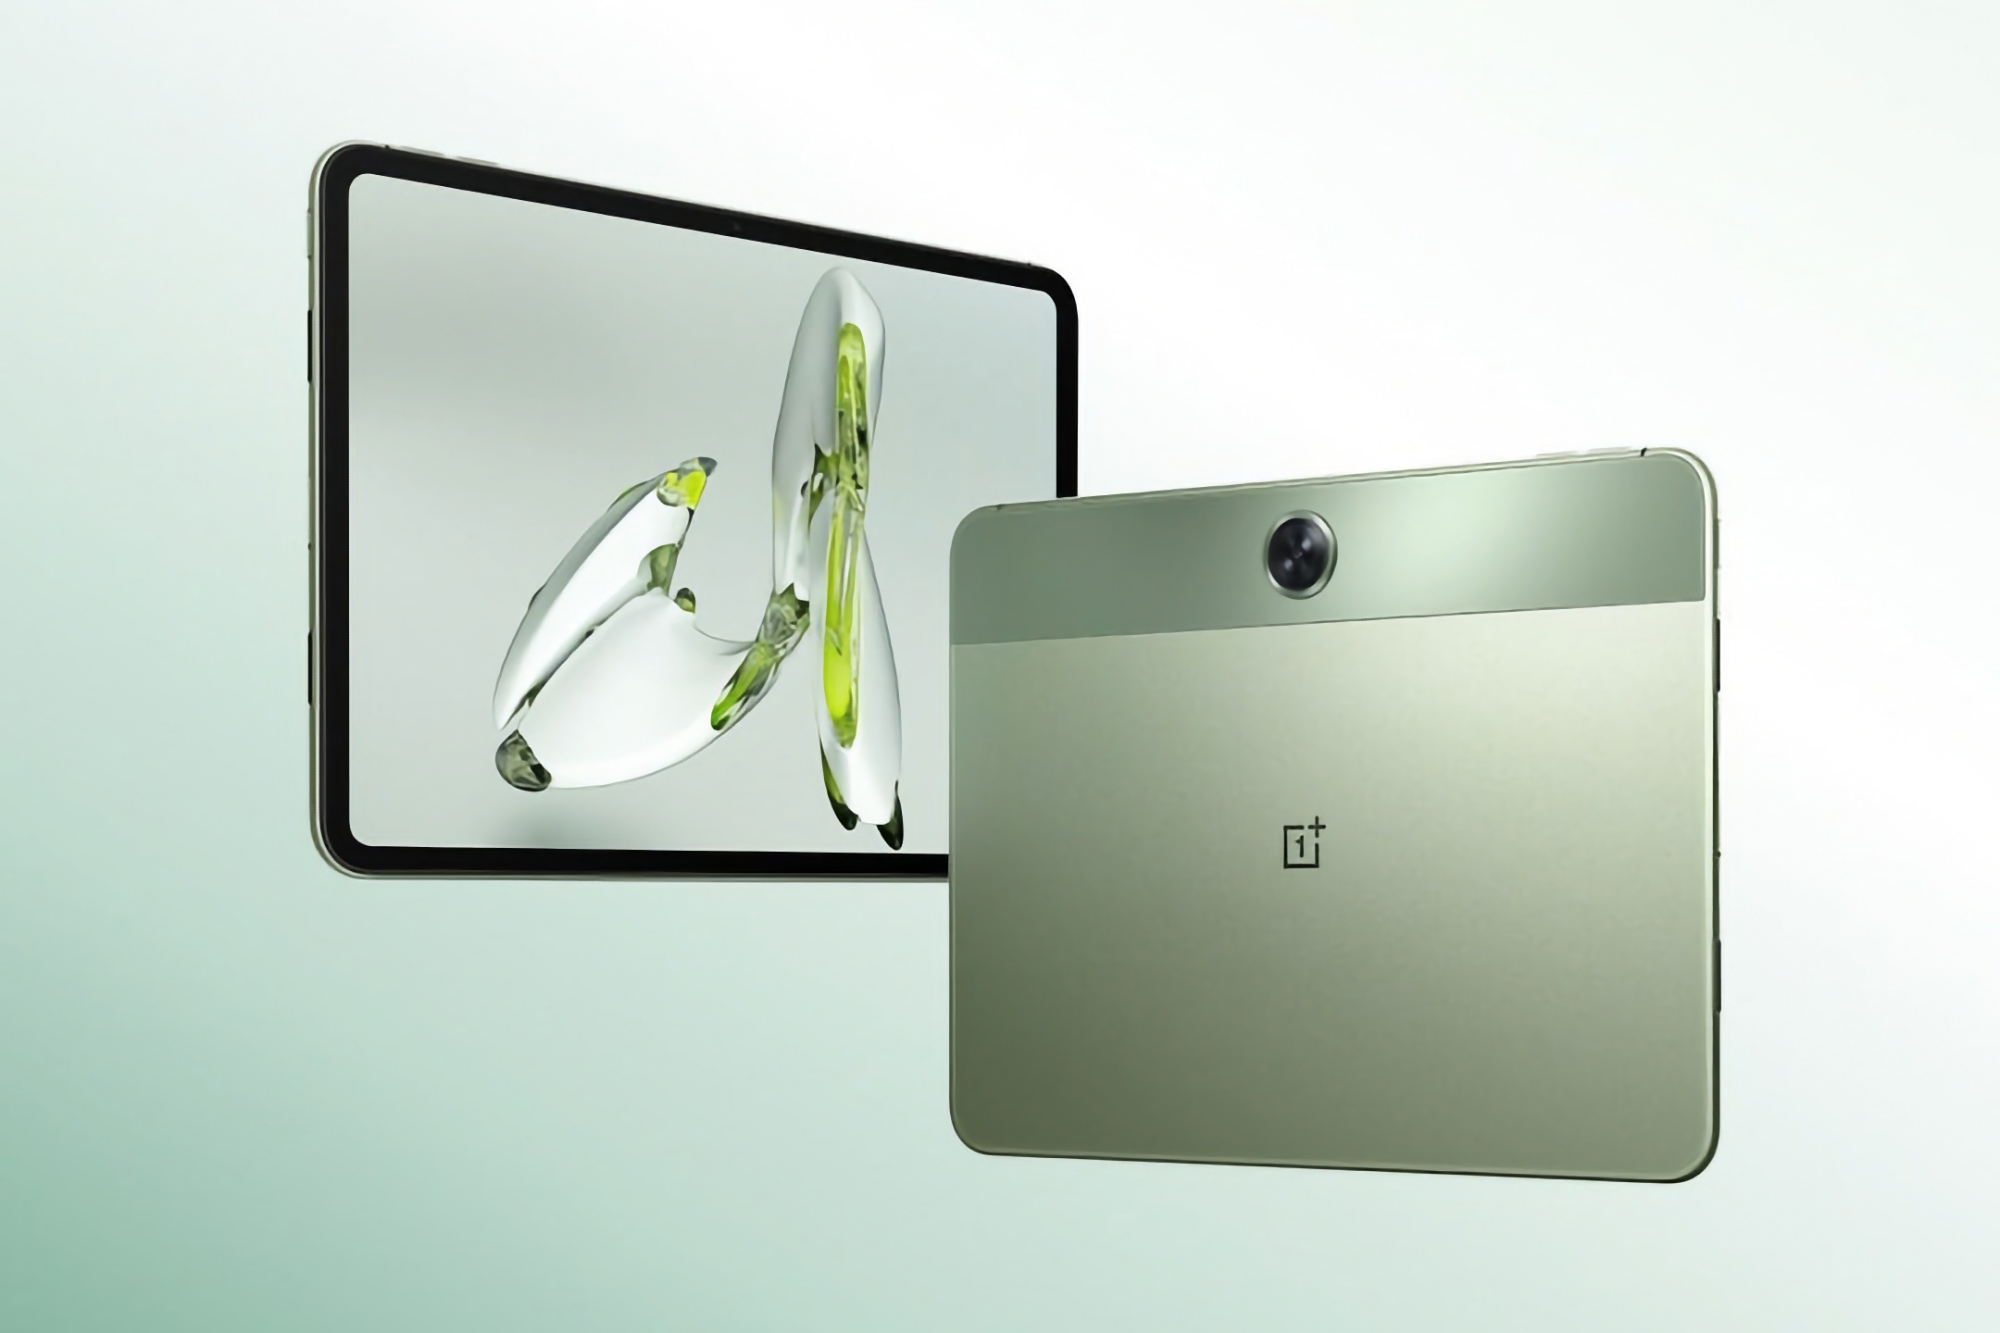 Sådan kommer OnePlus Pad Go til at se ud: virksomhedens nye tablet med 2K-skærm og Dolby Atmos-understøttelse.